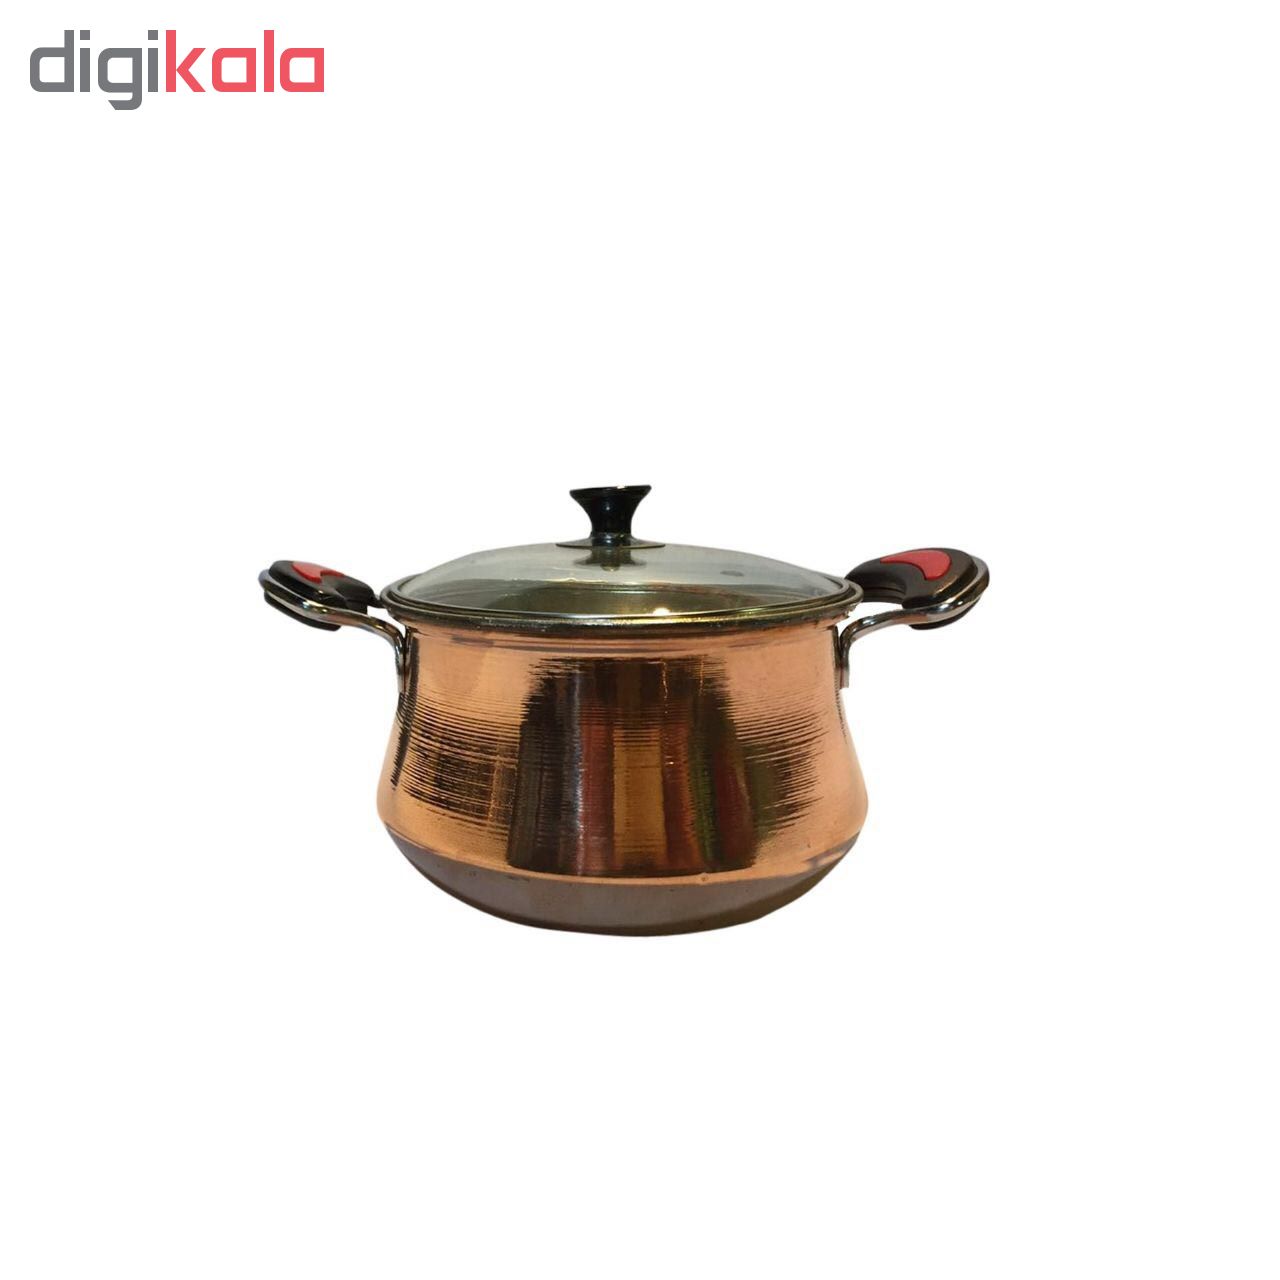 Copper saucepan, 3-piece set, Model KOMAJDAN 